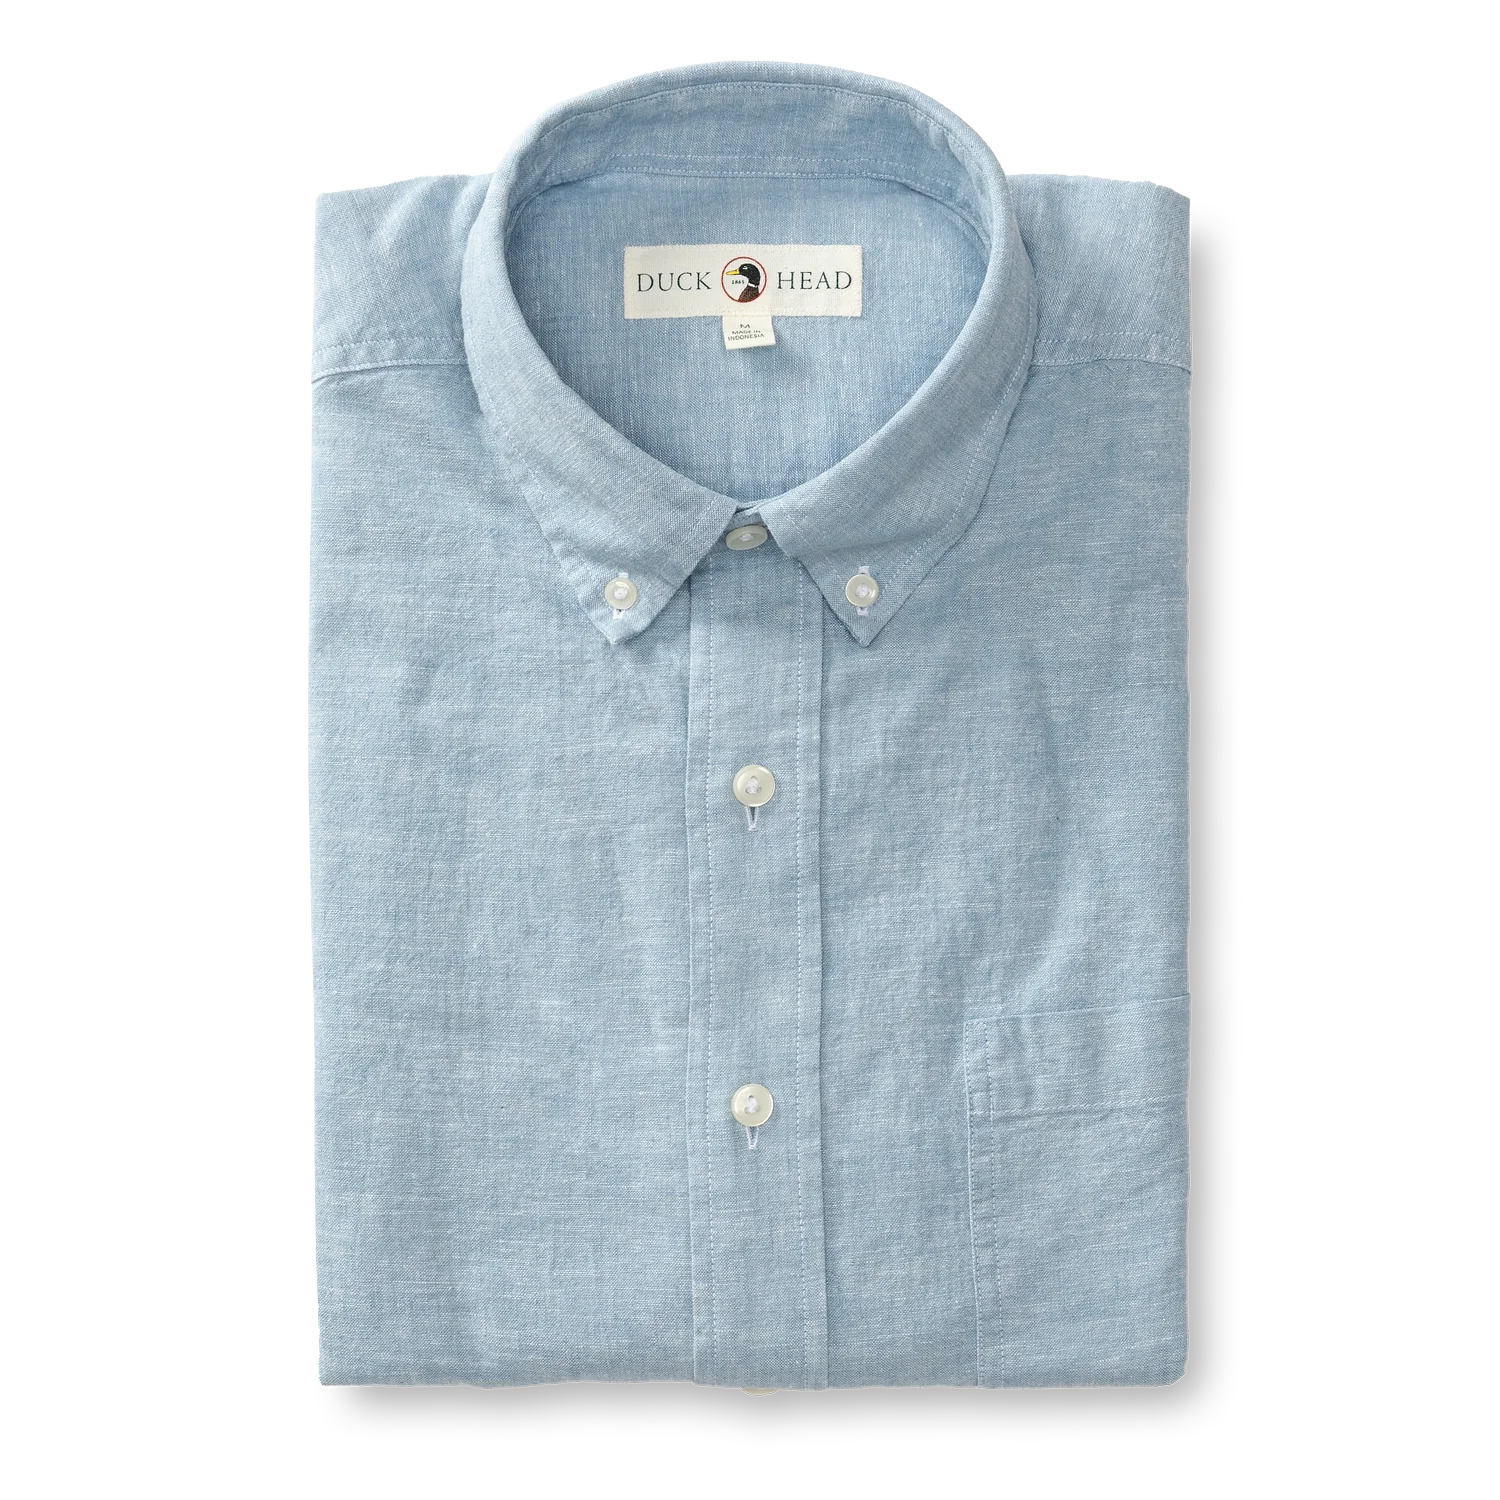 DUCK HEAD Men's Sport Shirt LURE BLUE / S Duck Head Linen Cotton Oxford Sport Shirt || David's Clothing D11277479